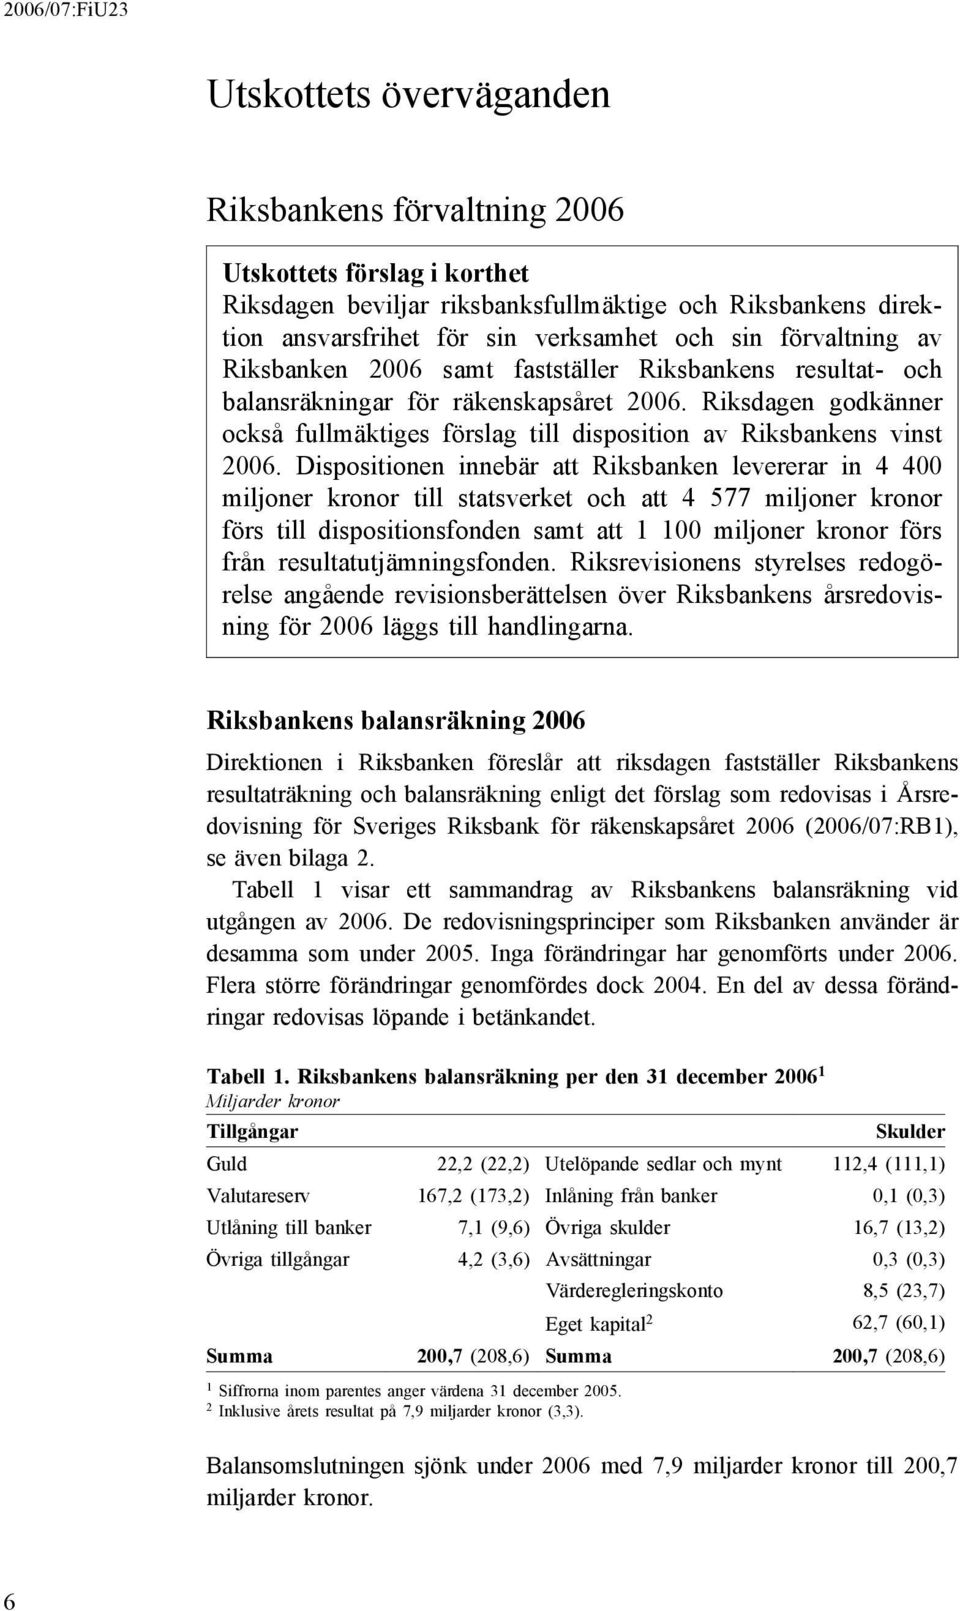 Riksdagen godkänner också fullmäktiges förslag till disposition av Riksbankens vinst 2006.